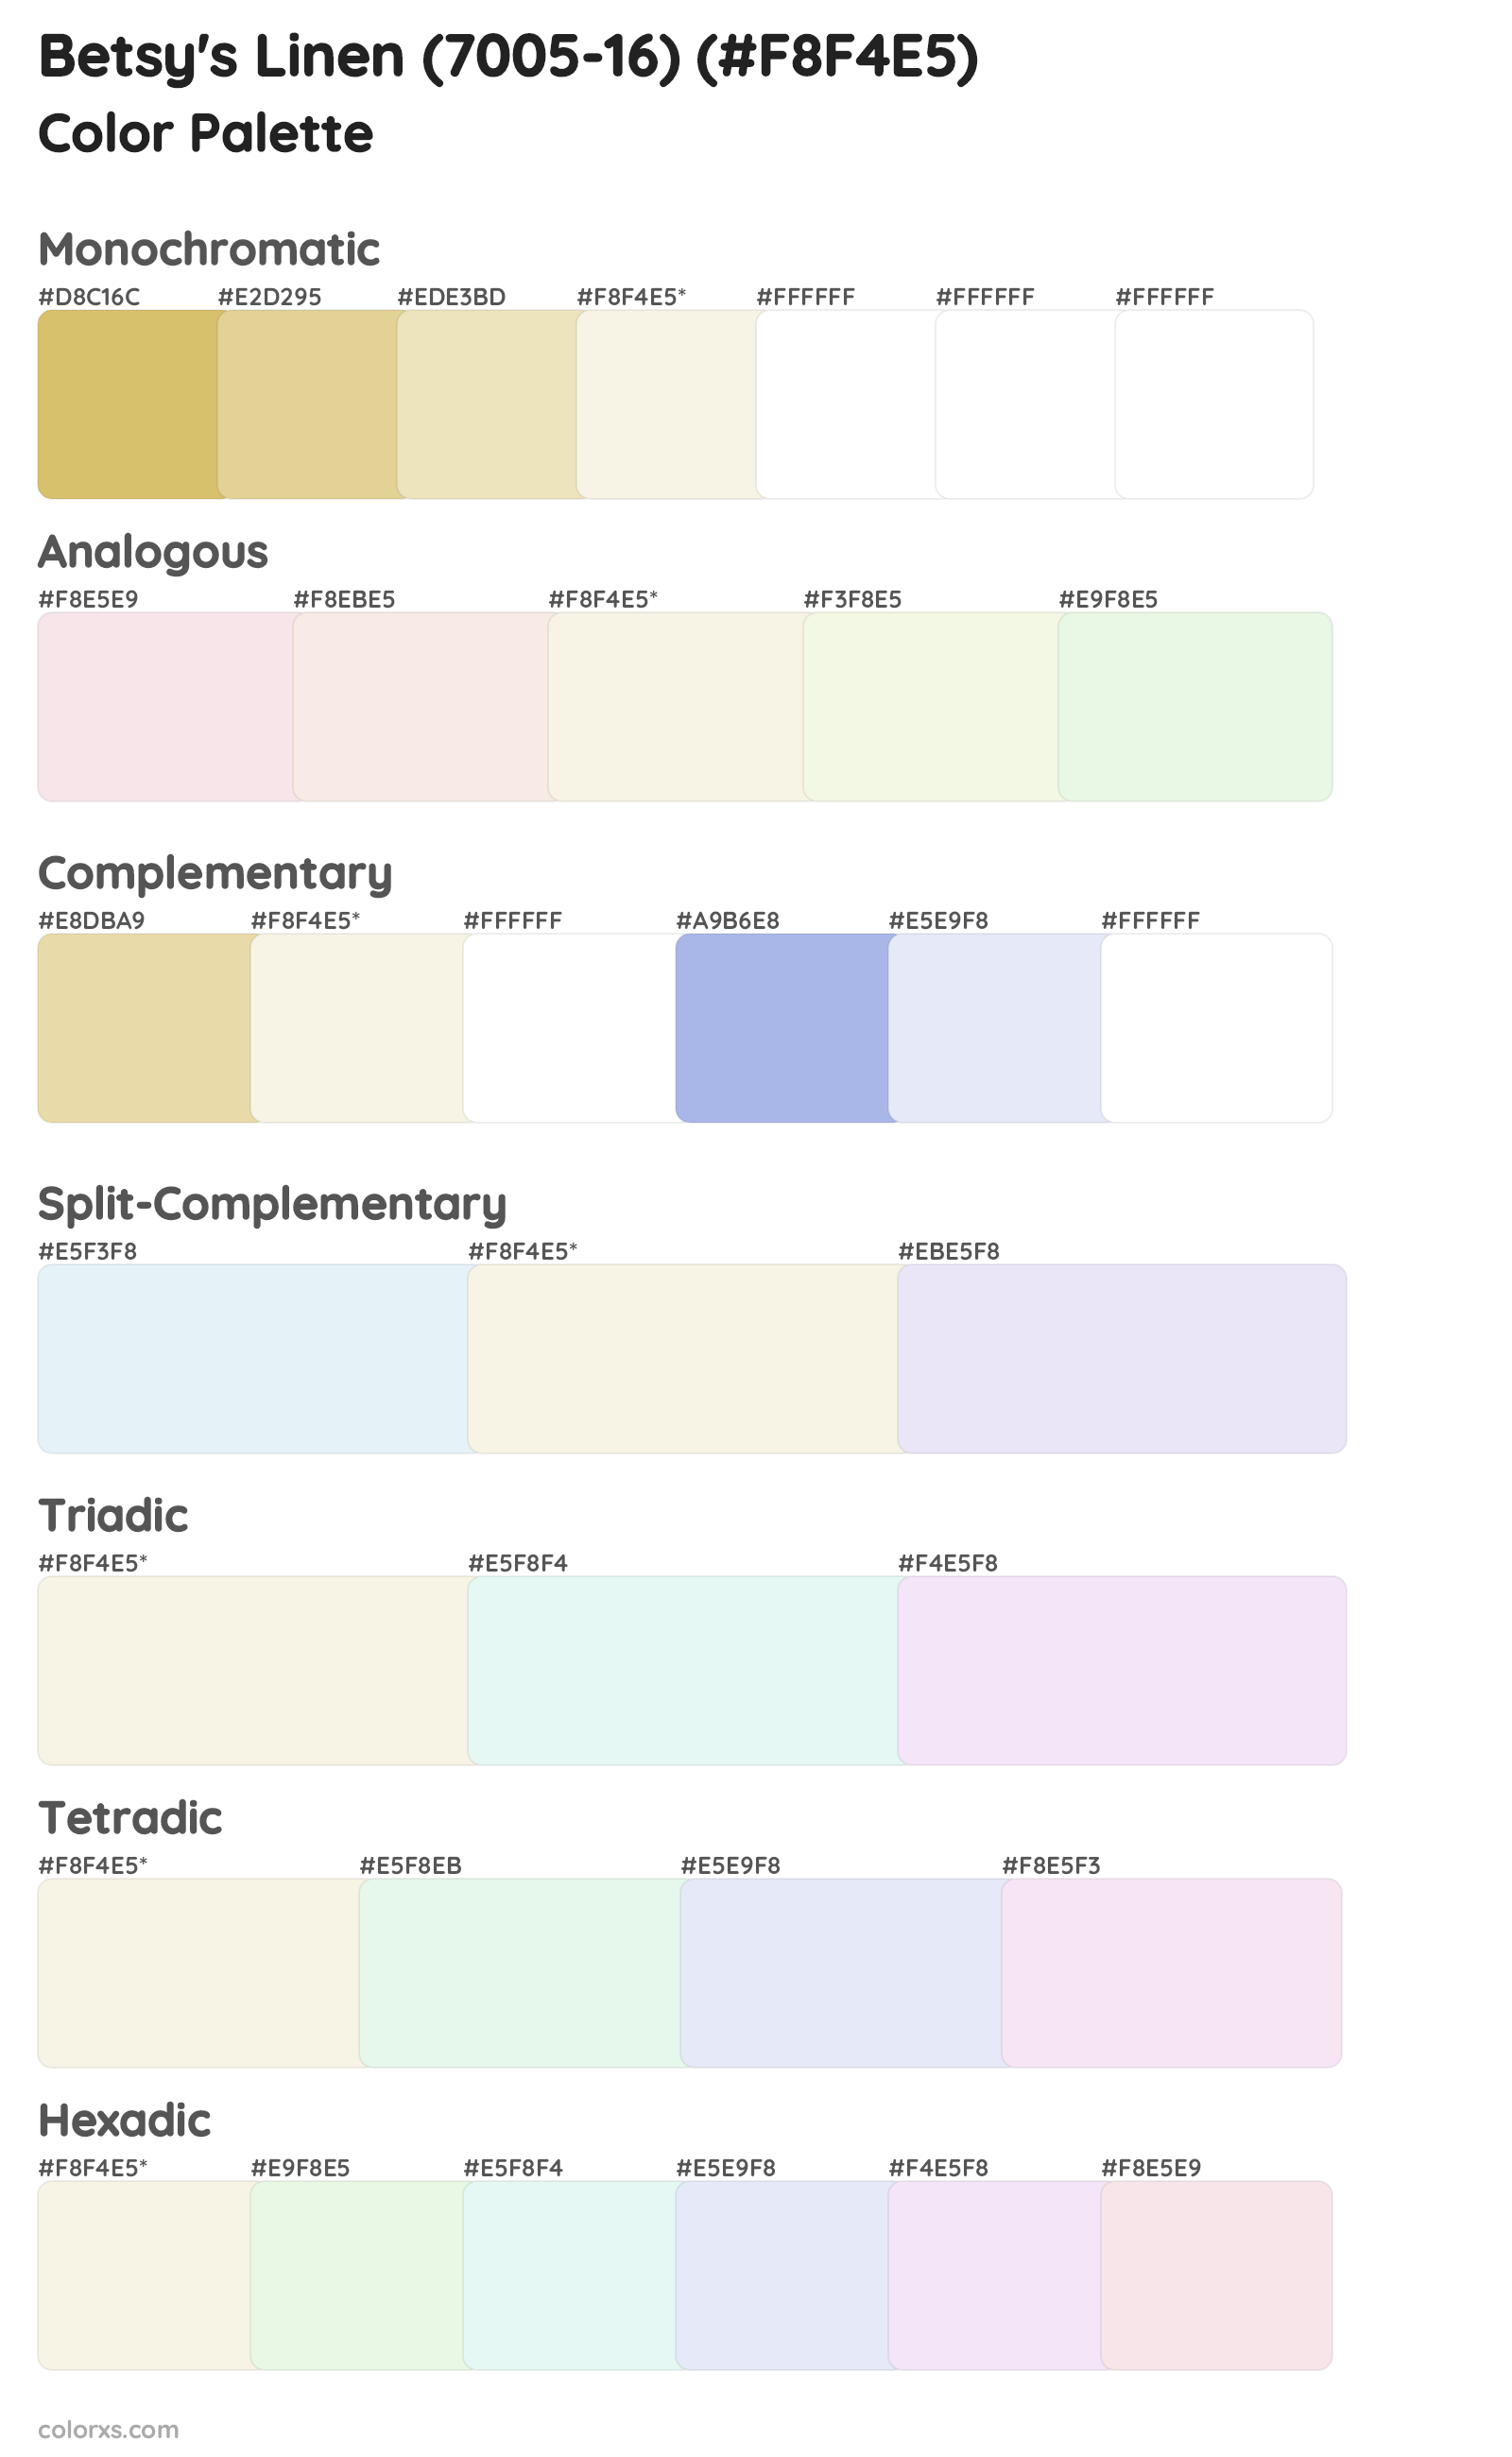 Betsy's Linen (7005-16) Color Scheme Palettes